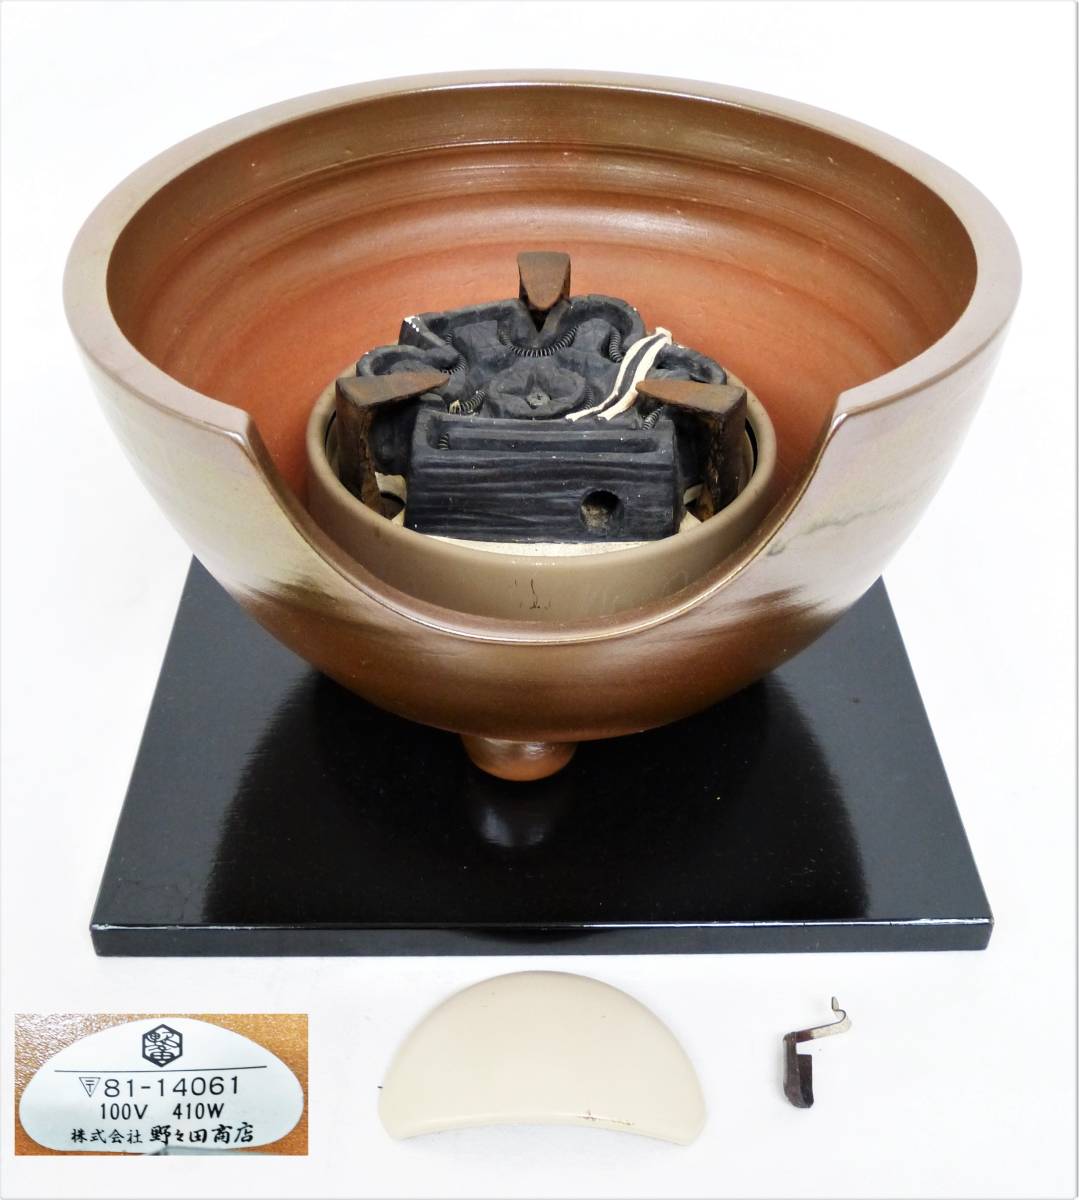 土風炉 茶釜 五徳 火箸セット 茶道具 風炉 紅鉢風炉 小釜 松地紋 k1650 